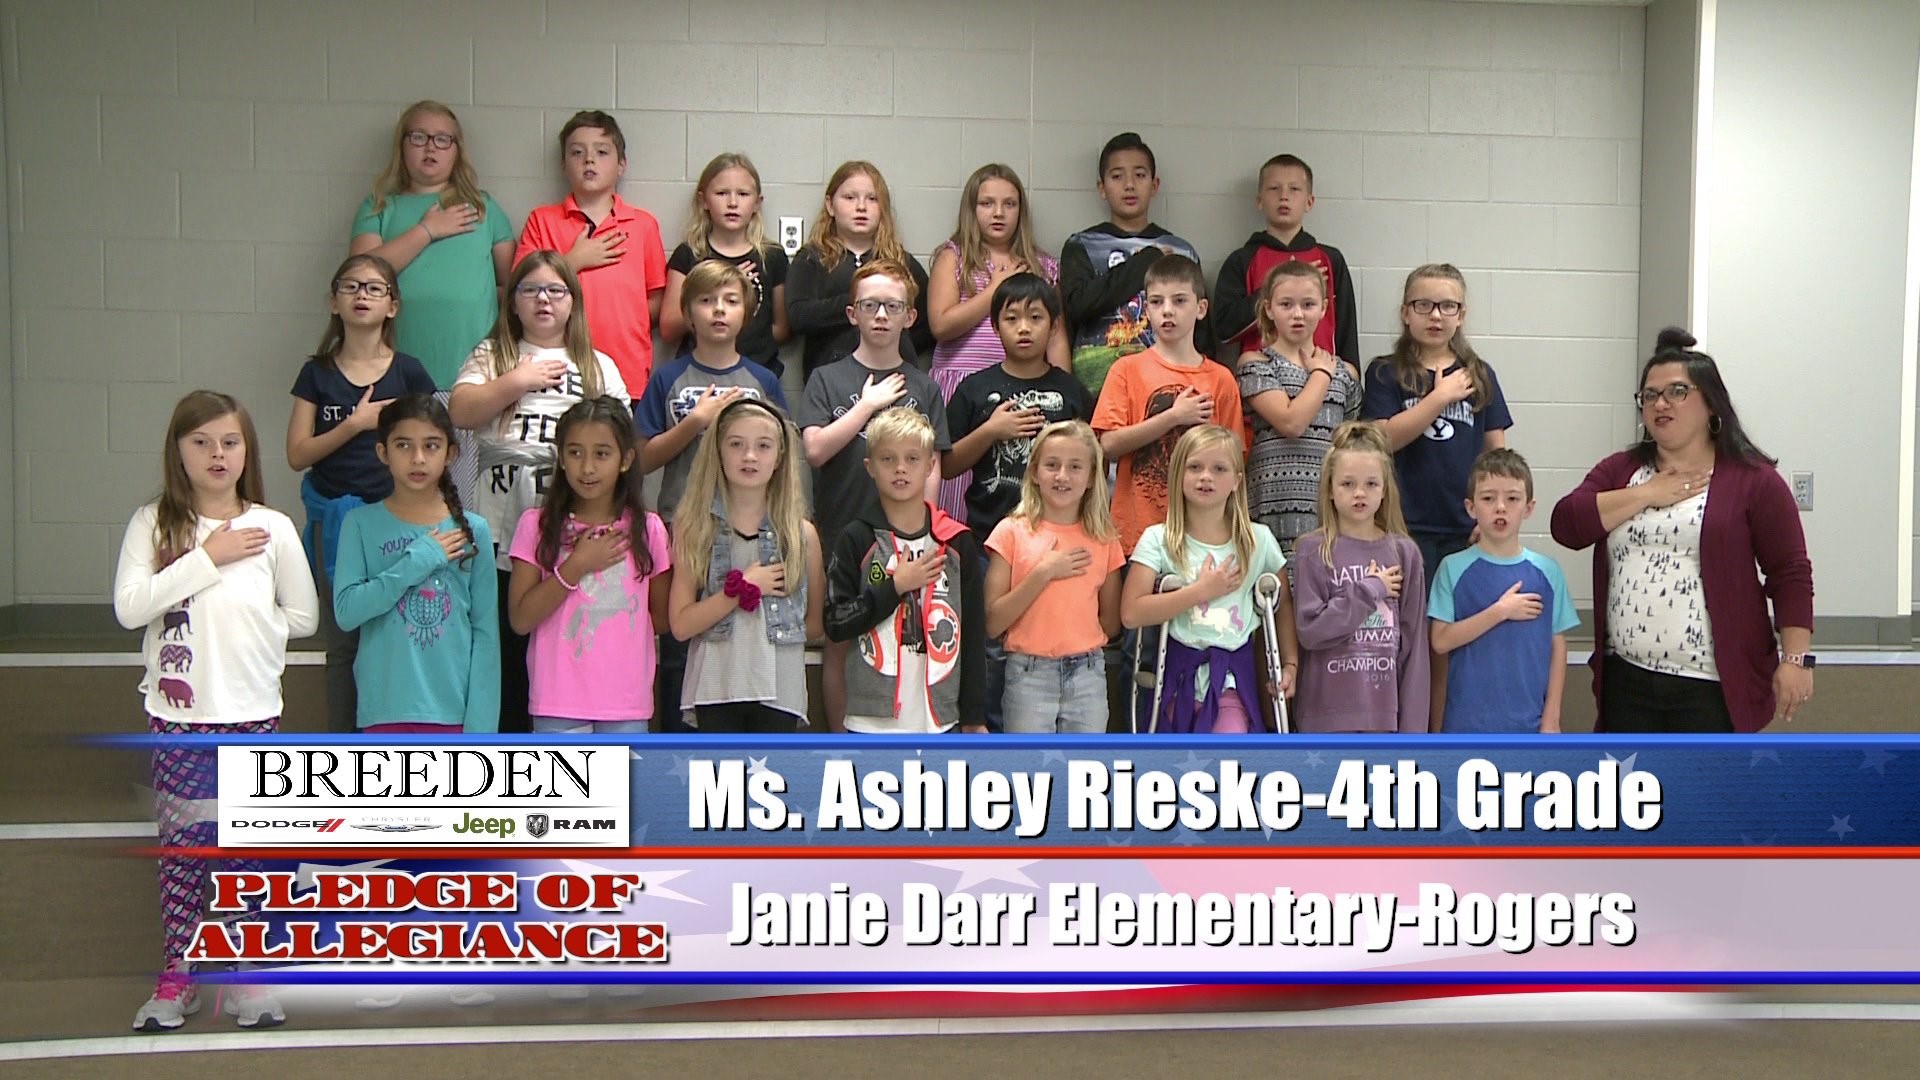 Ms. Ashley Rieske  4th Grade  Janie Darr Elementary - Rogers